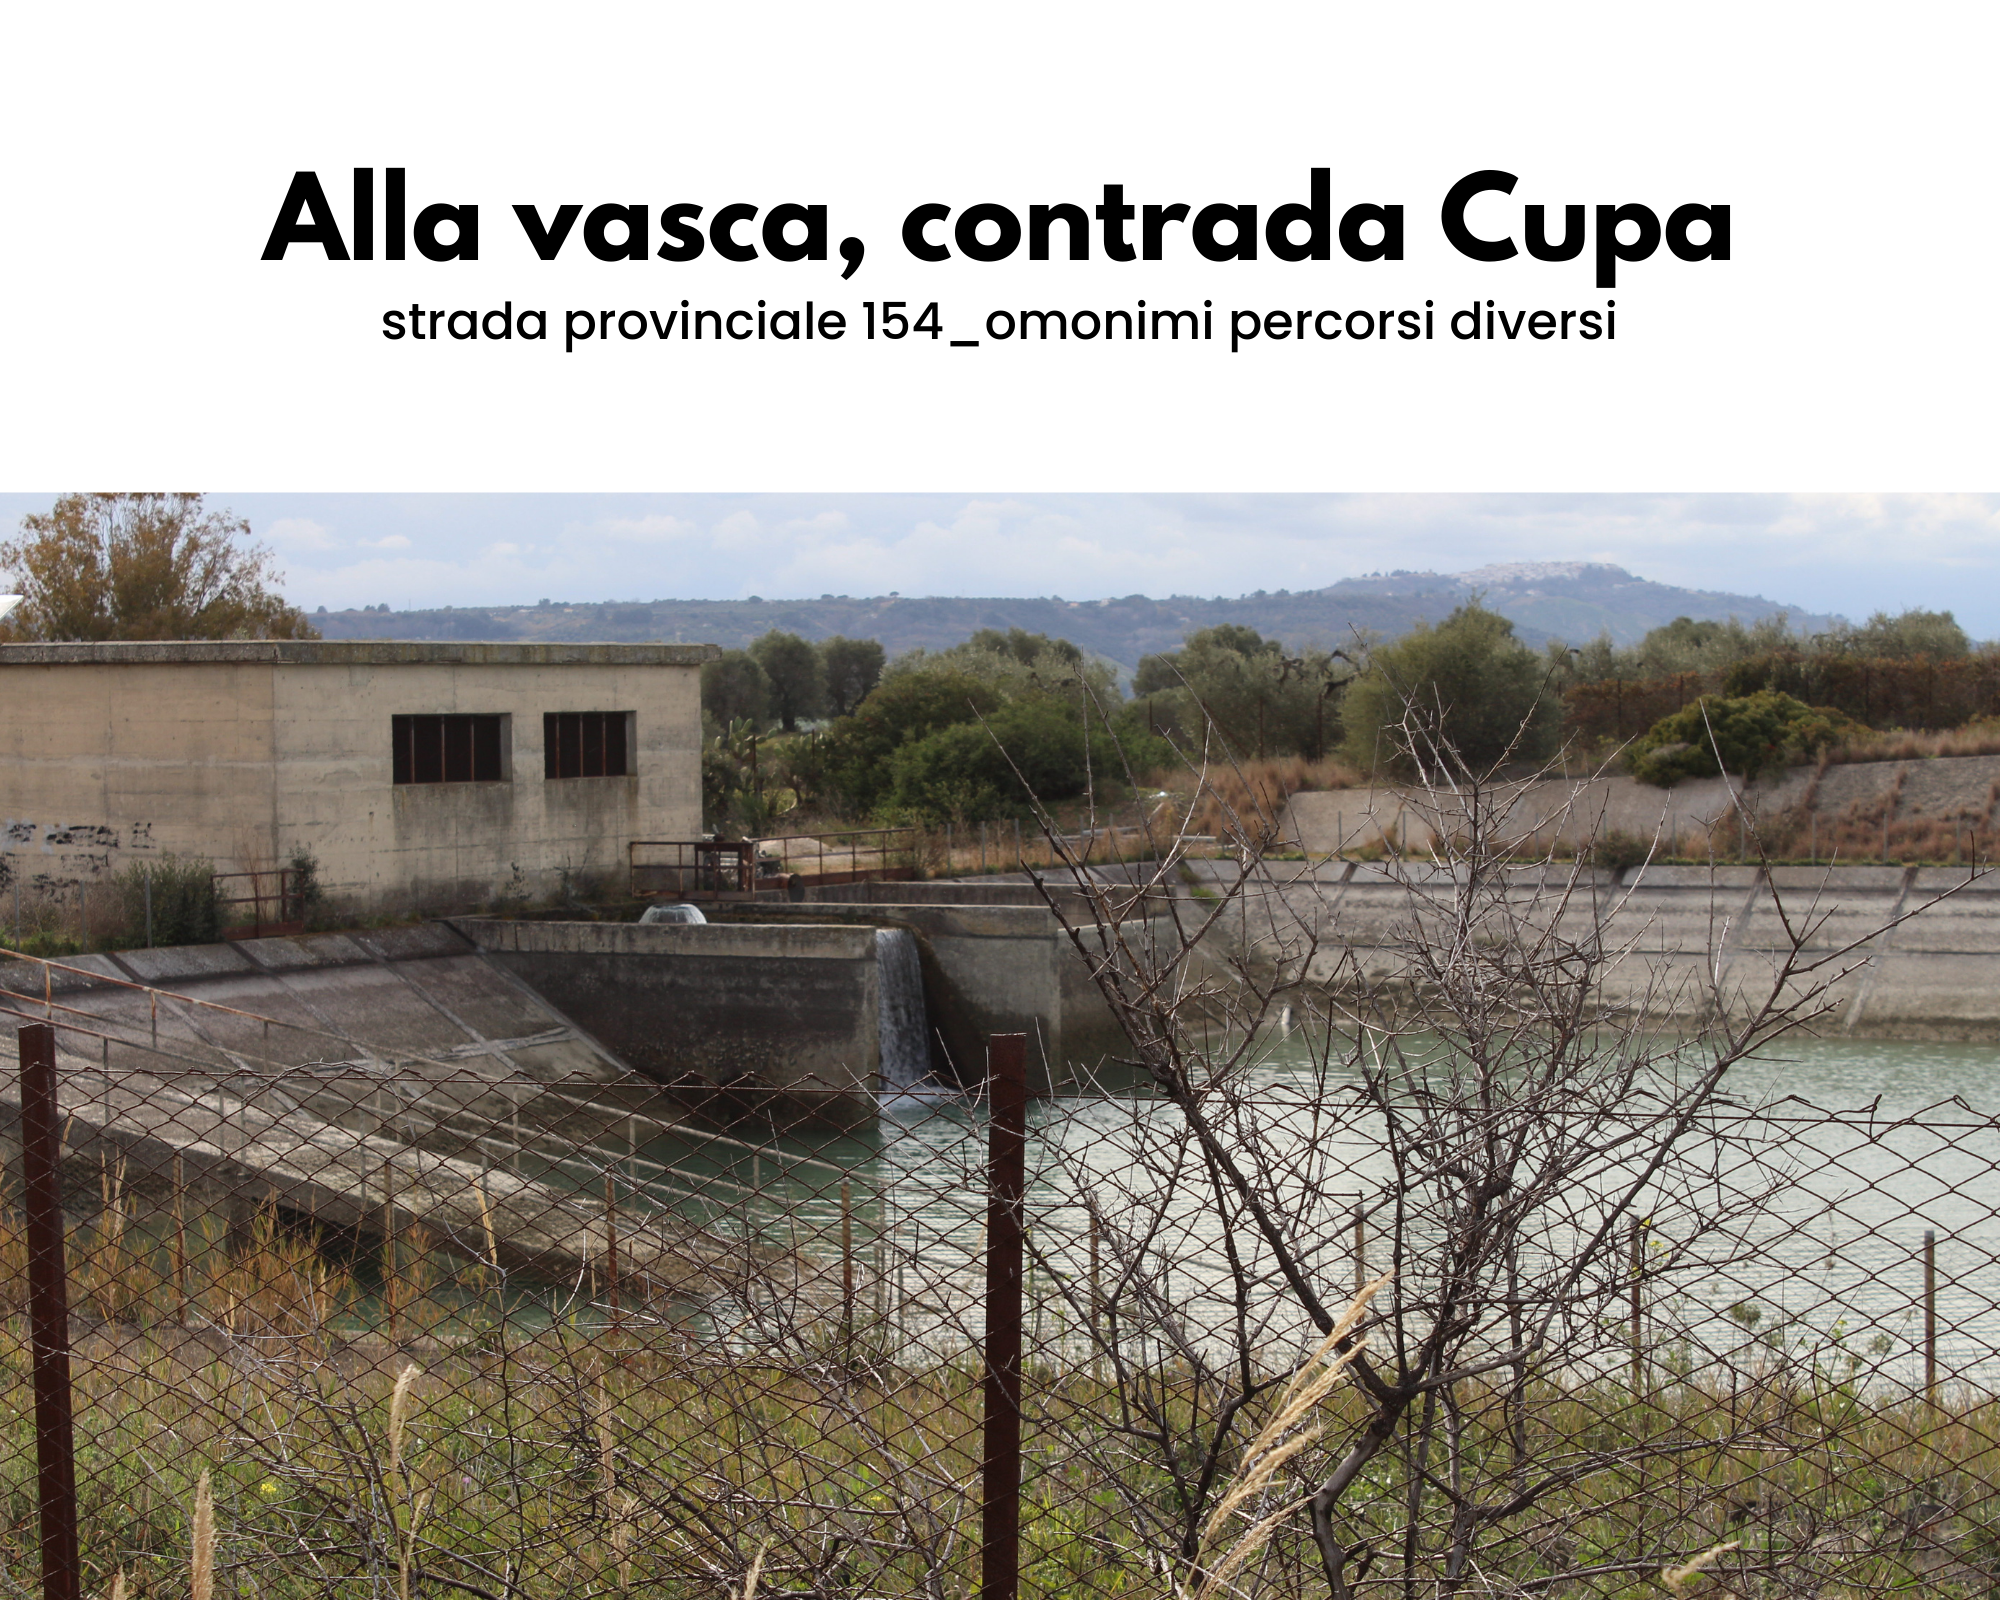 Alla vasca, contrada Cupa - strada provinciale 154_omonimi percorsi diversi Una recinzione di ferro circonda una vasca per l'irrigazione